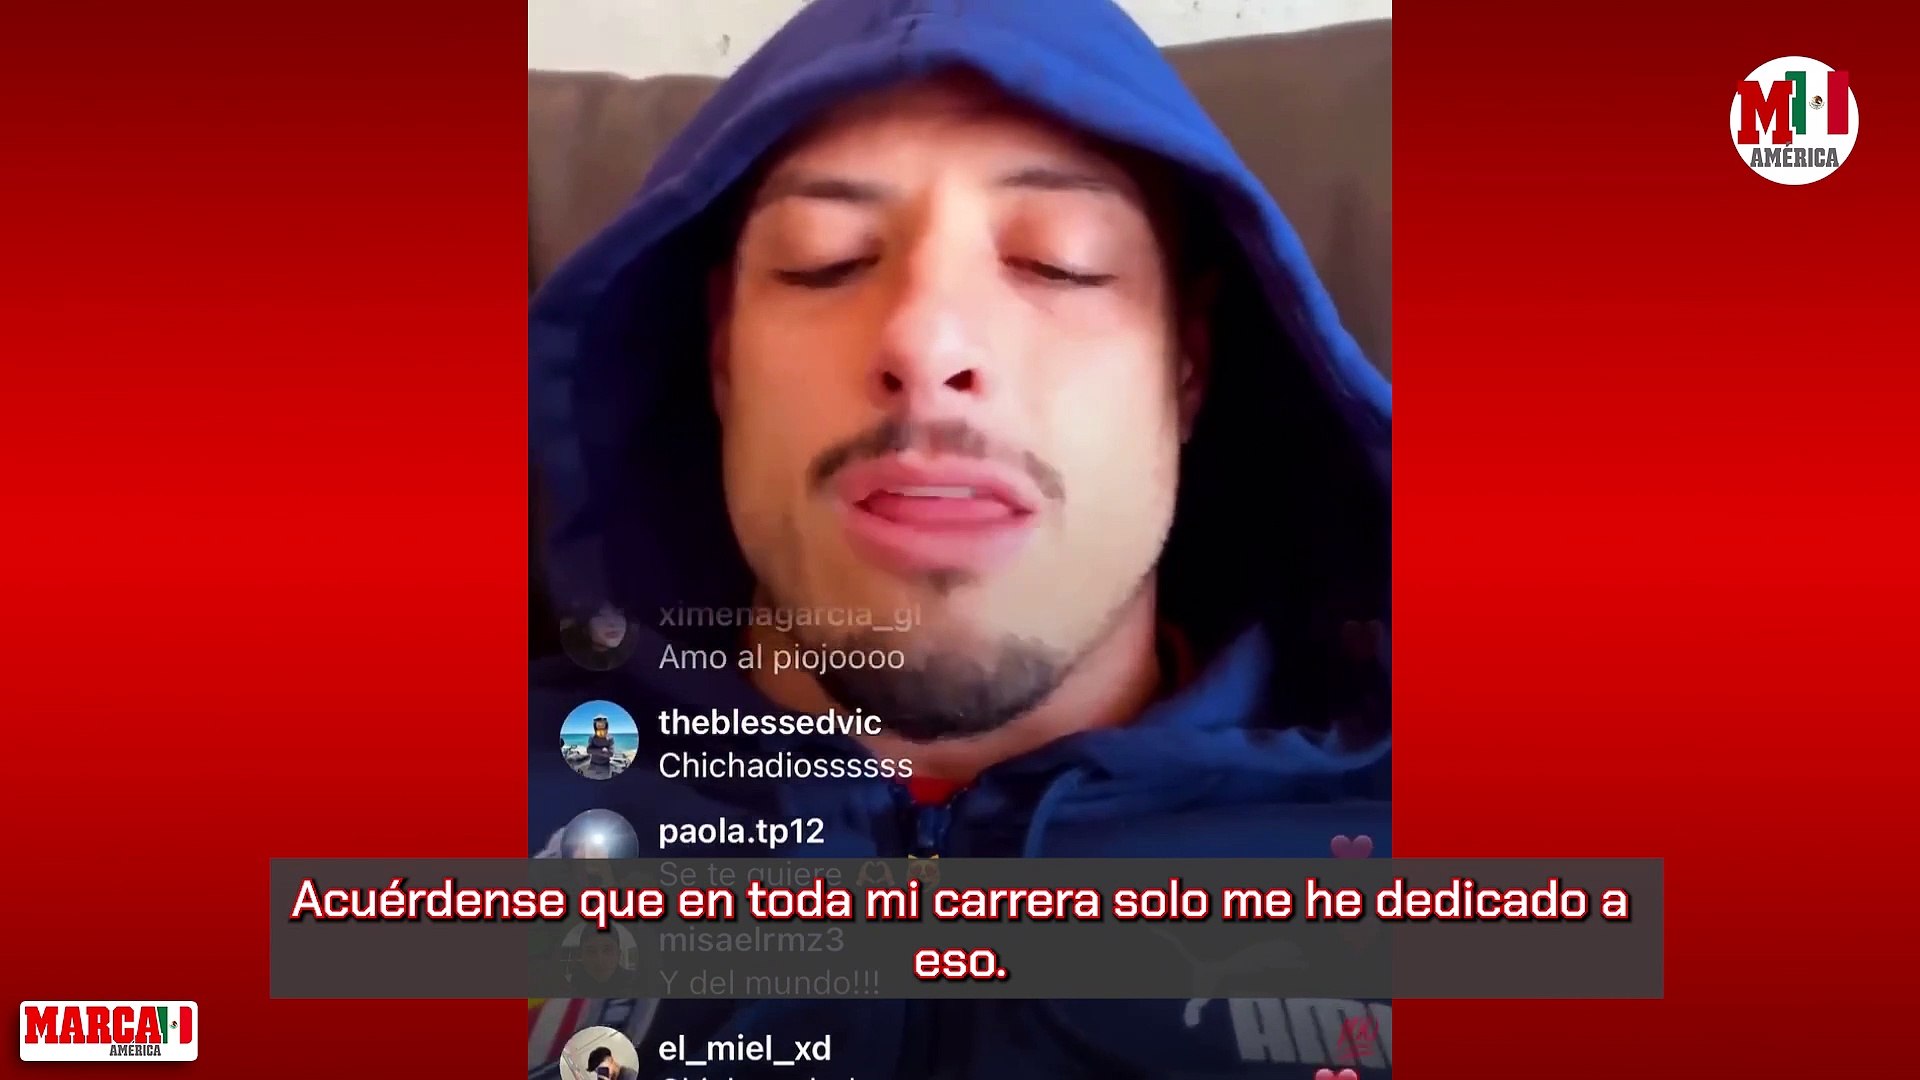 Chicharito desata polmica al ironizar en Instagram sobre su fichaje con Real Madrid: "Me llevaron por cosas polticas"